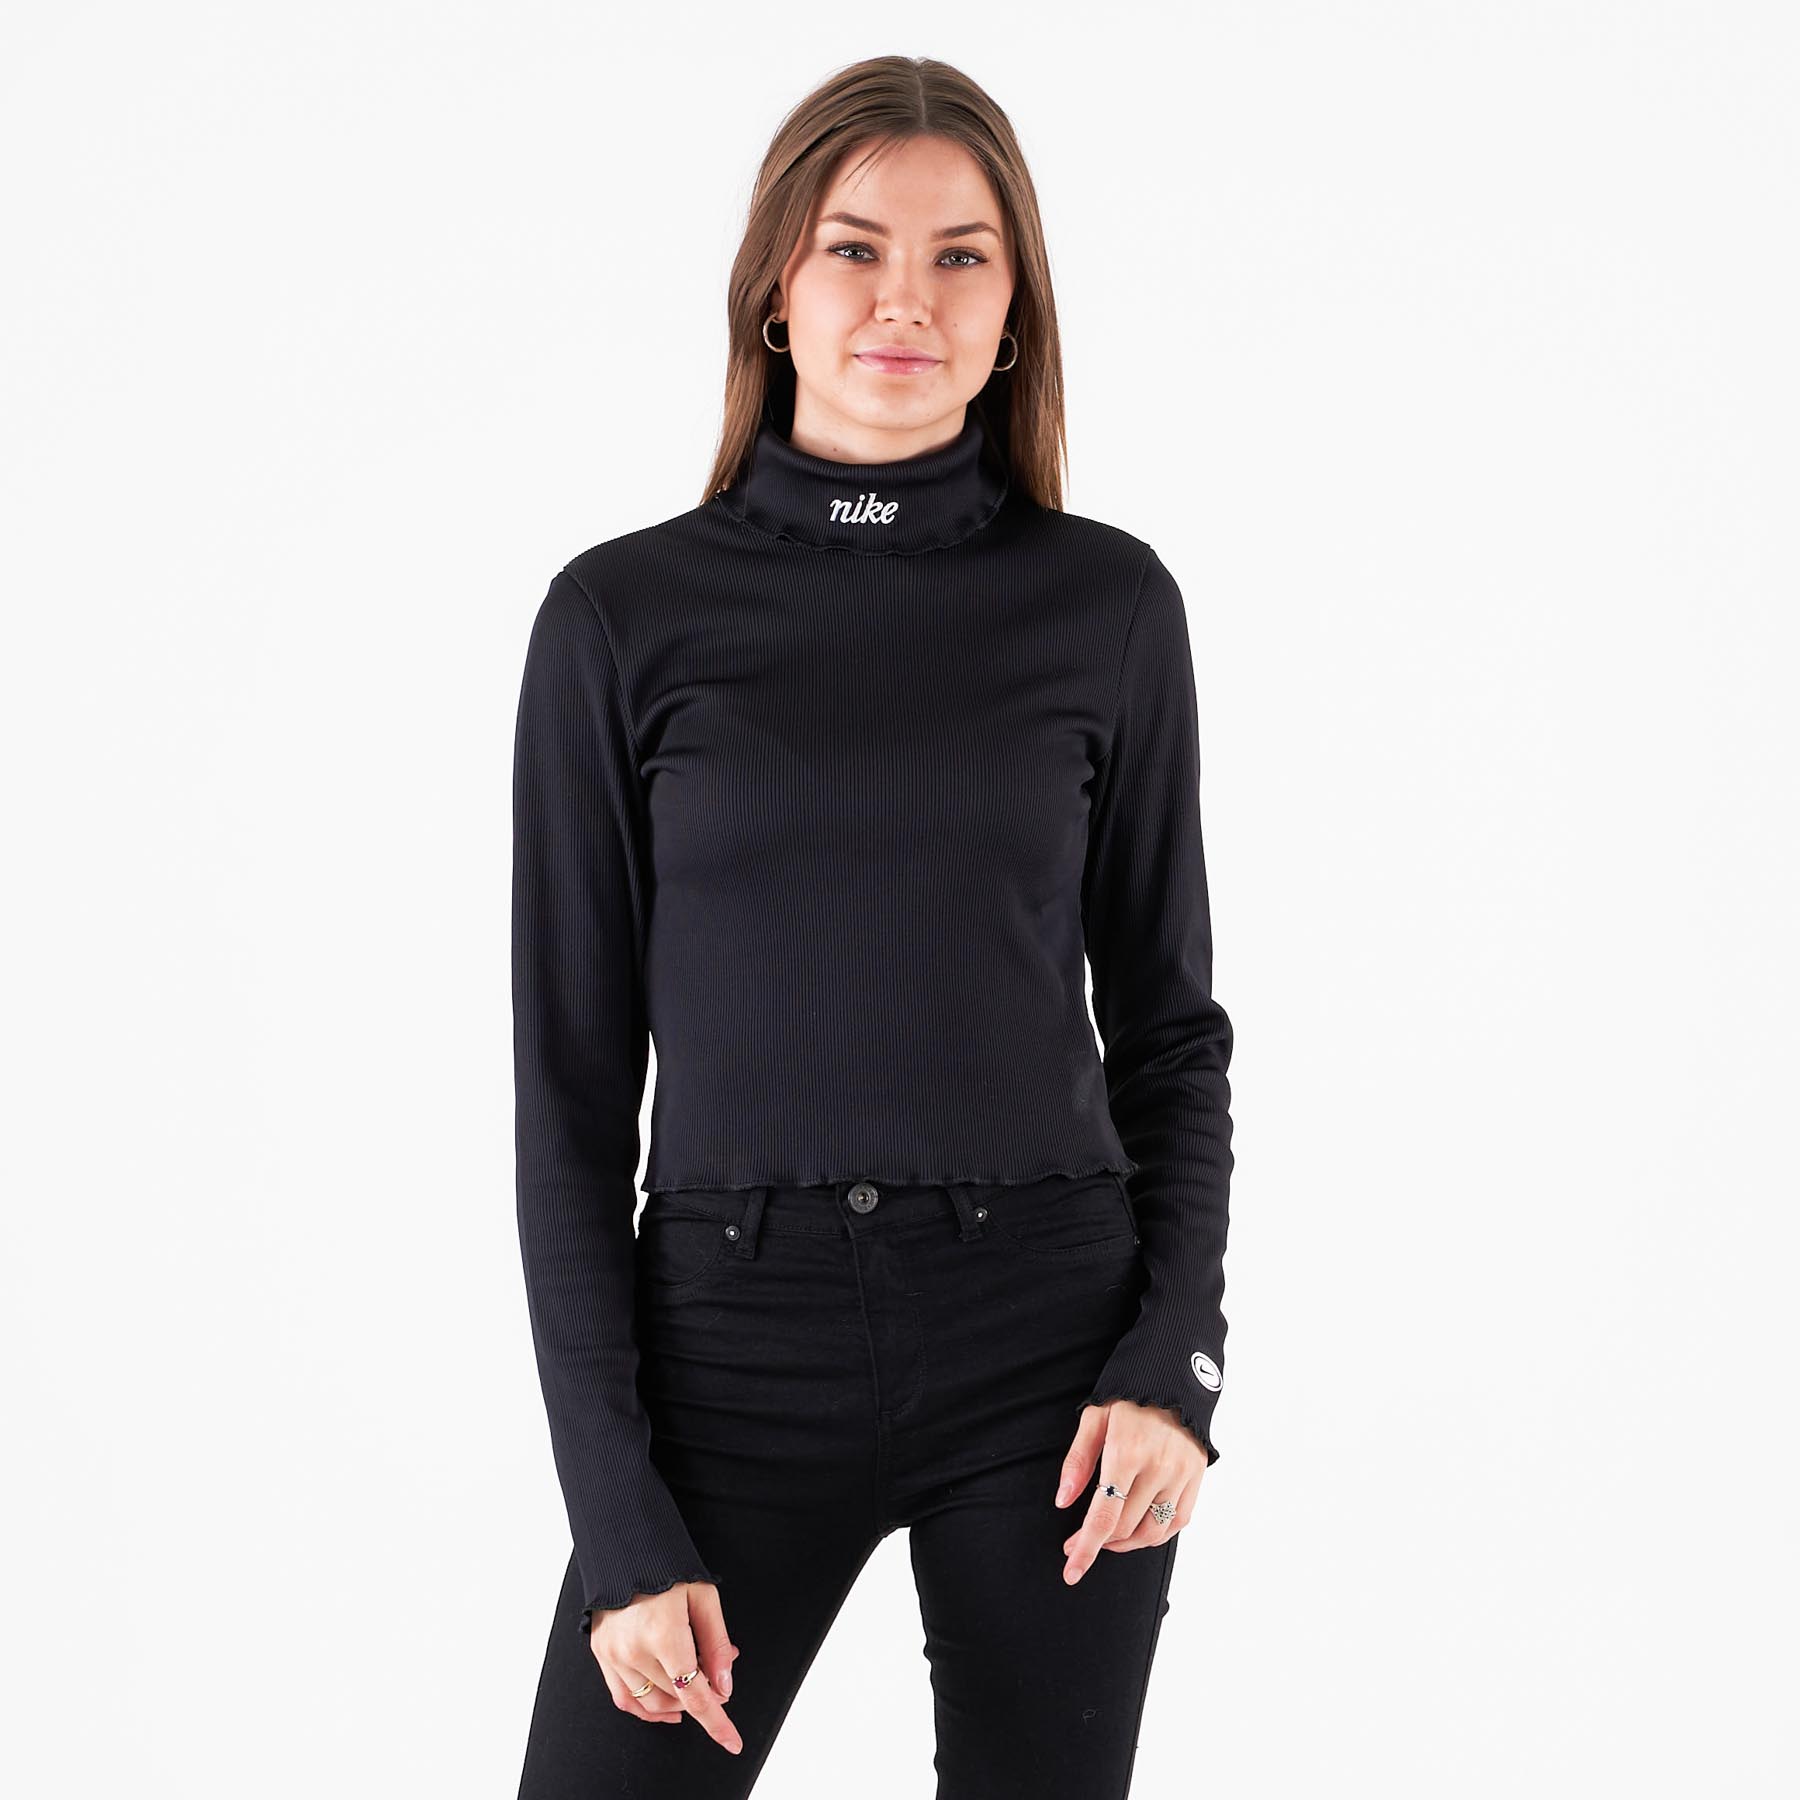 Billede af Nike - Sportswear turtleneck - Bluser og skjorter til kvinder - Sort - XS